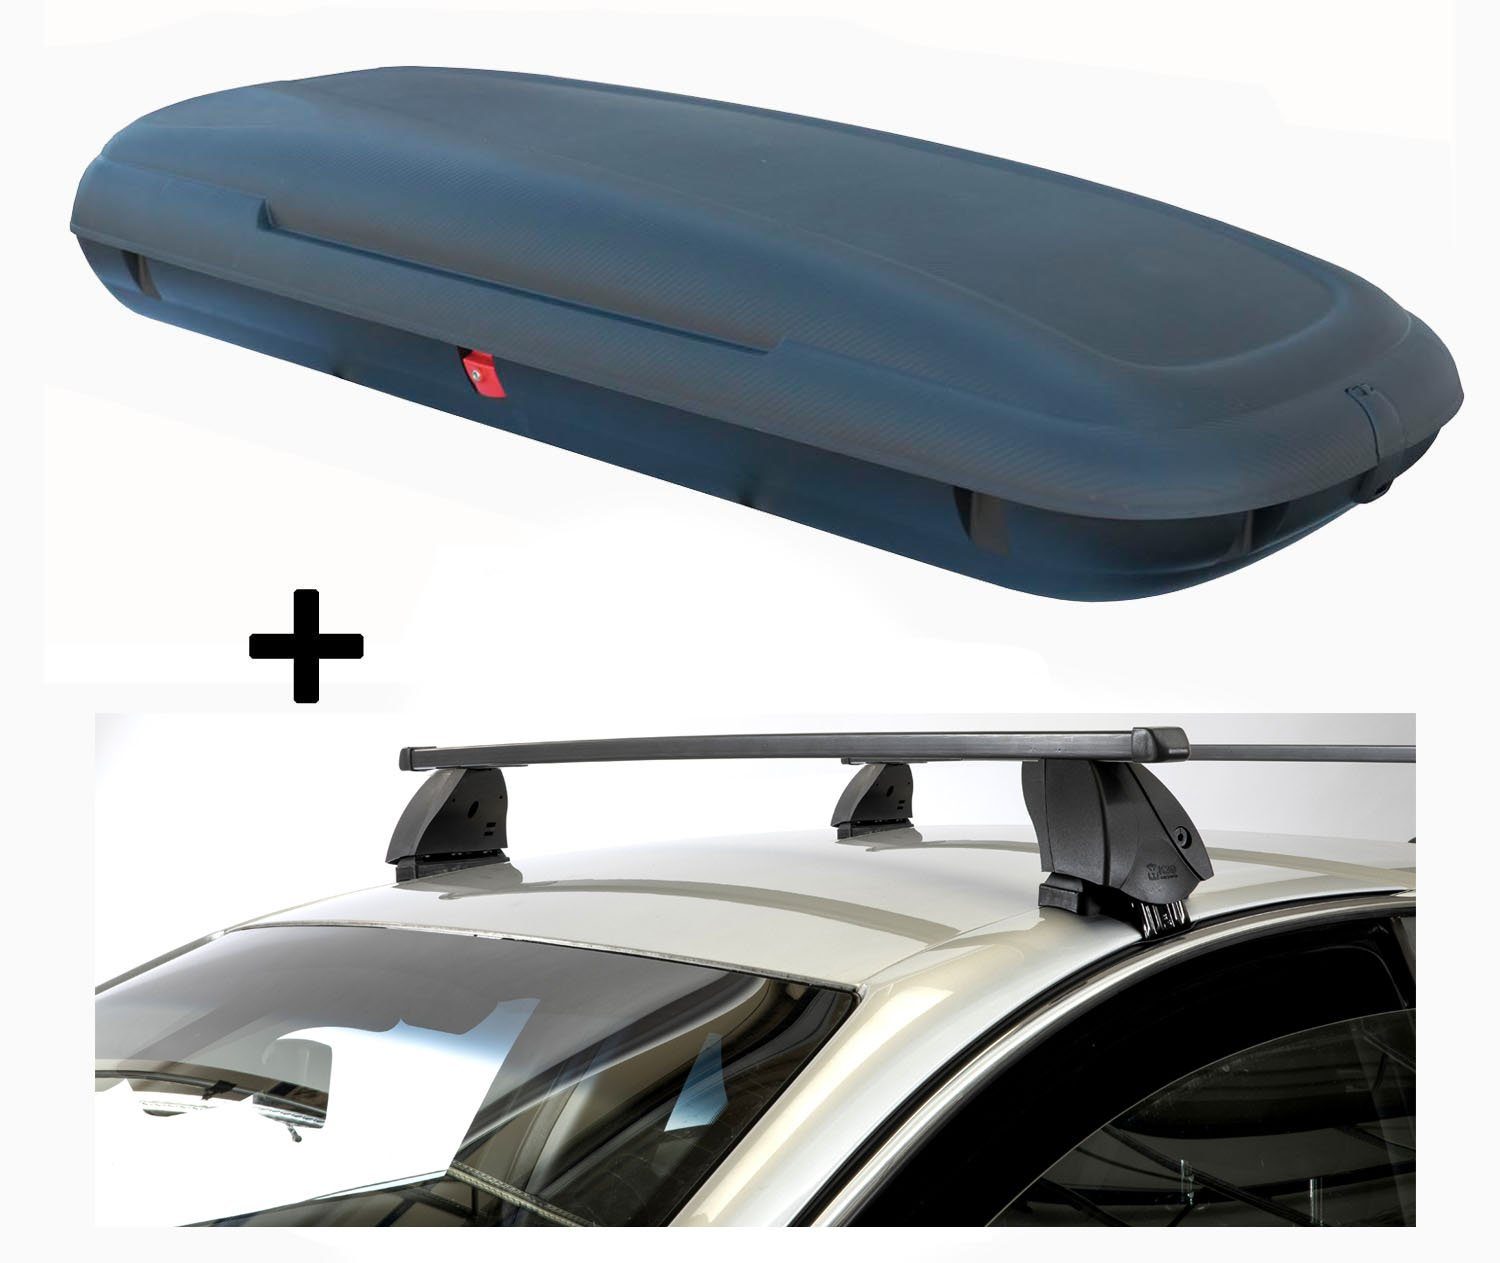 VDP Dachbox, (Für Ihren Daihatsu Terios (5Türer) ab 06, Dachbox und Dachträger im Set), Dachbox VDPCA480 480 Liter carbonlook + Dachträger K1 MEDIUM kompatibel mit Daihatsu Terios (5Türer) ab 06